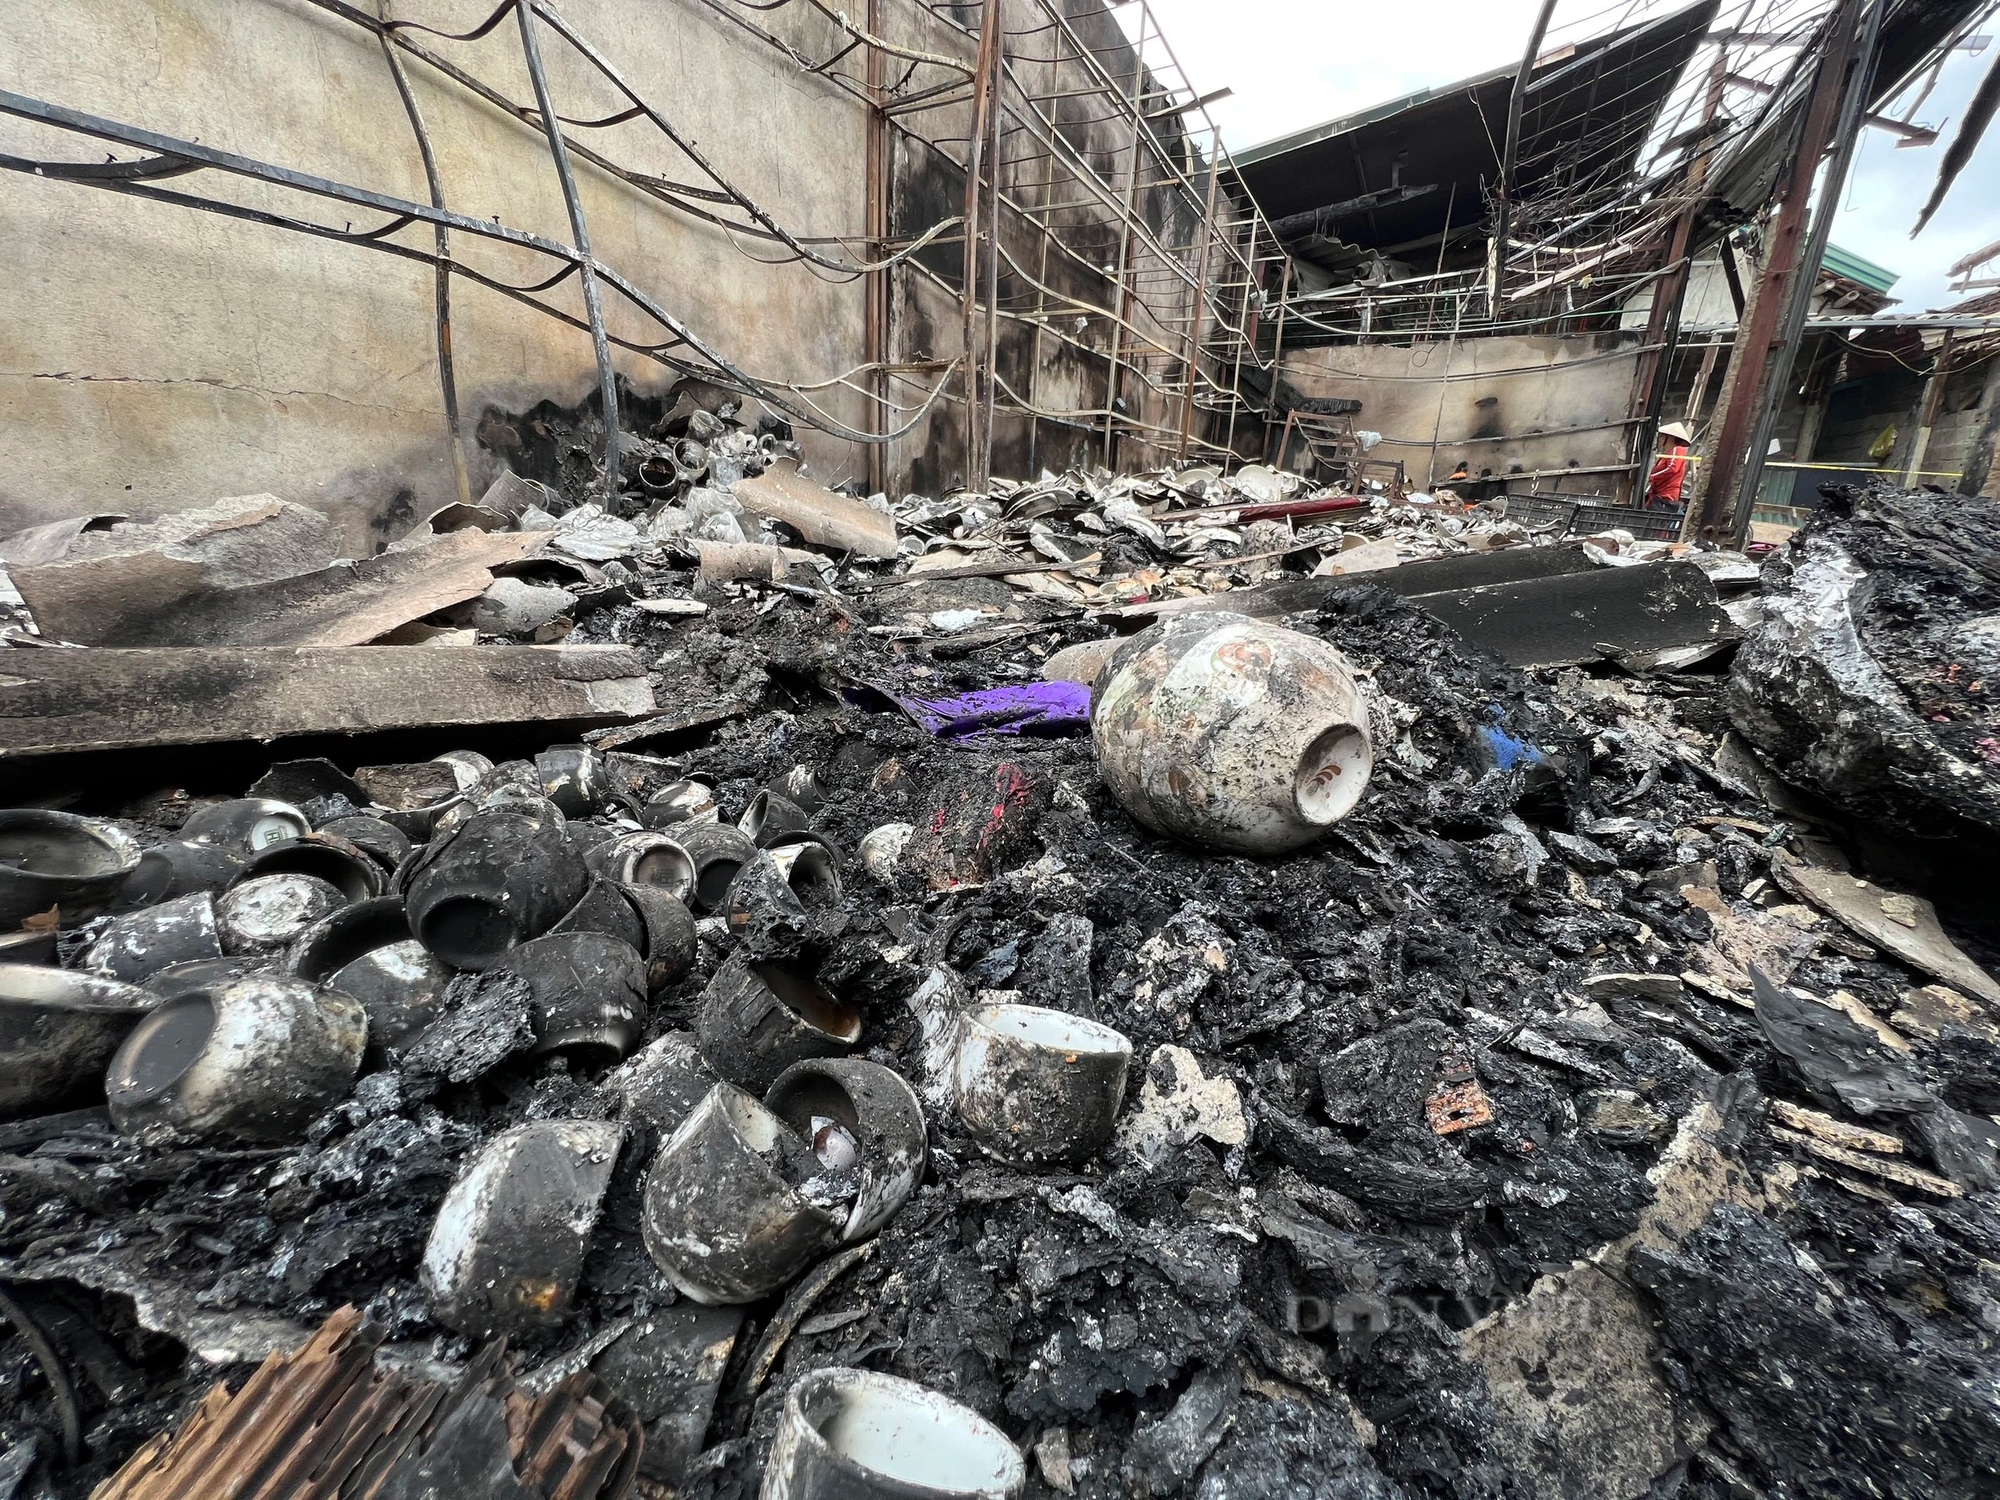 Khung cảnh tan hoang sau vụ cháy chợ Hàng Trạm, Hòa Bình- Ảnh 10.